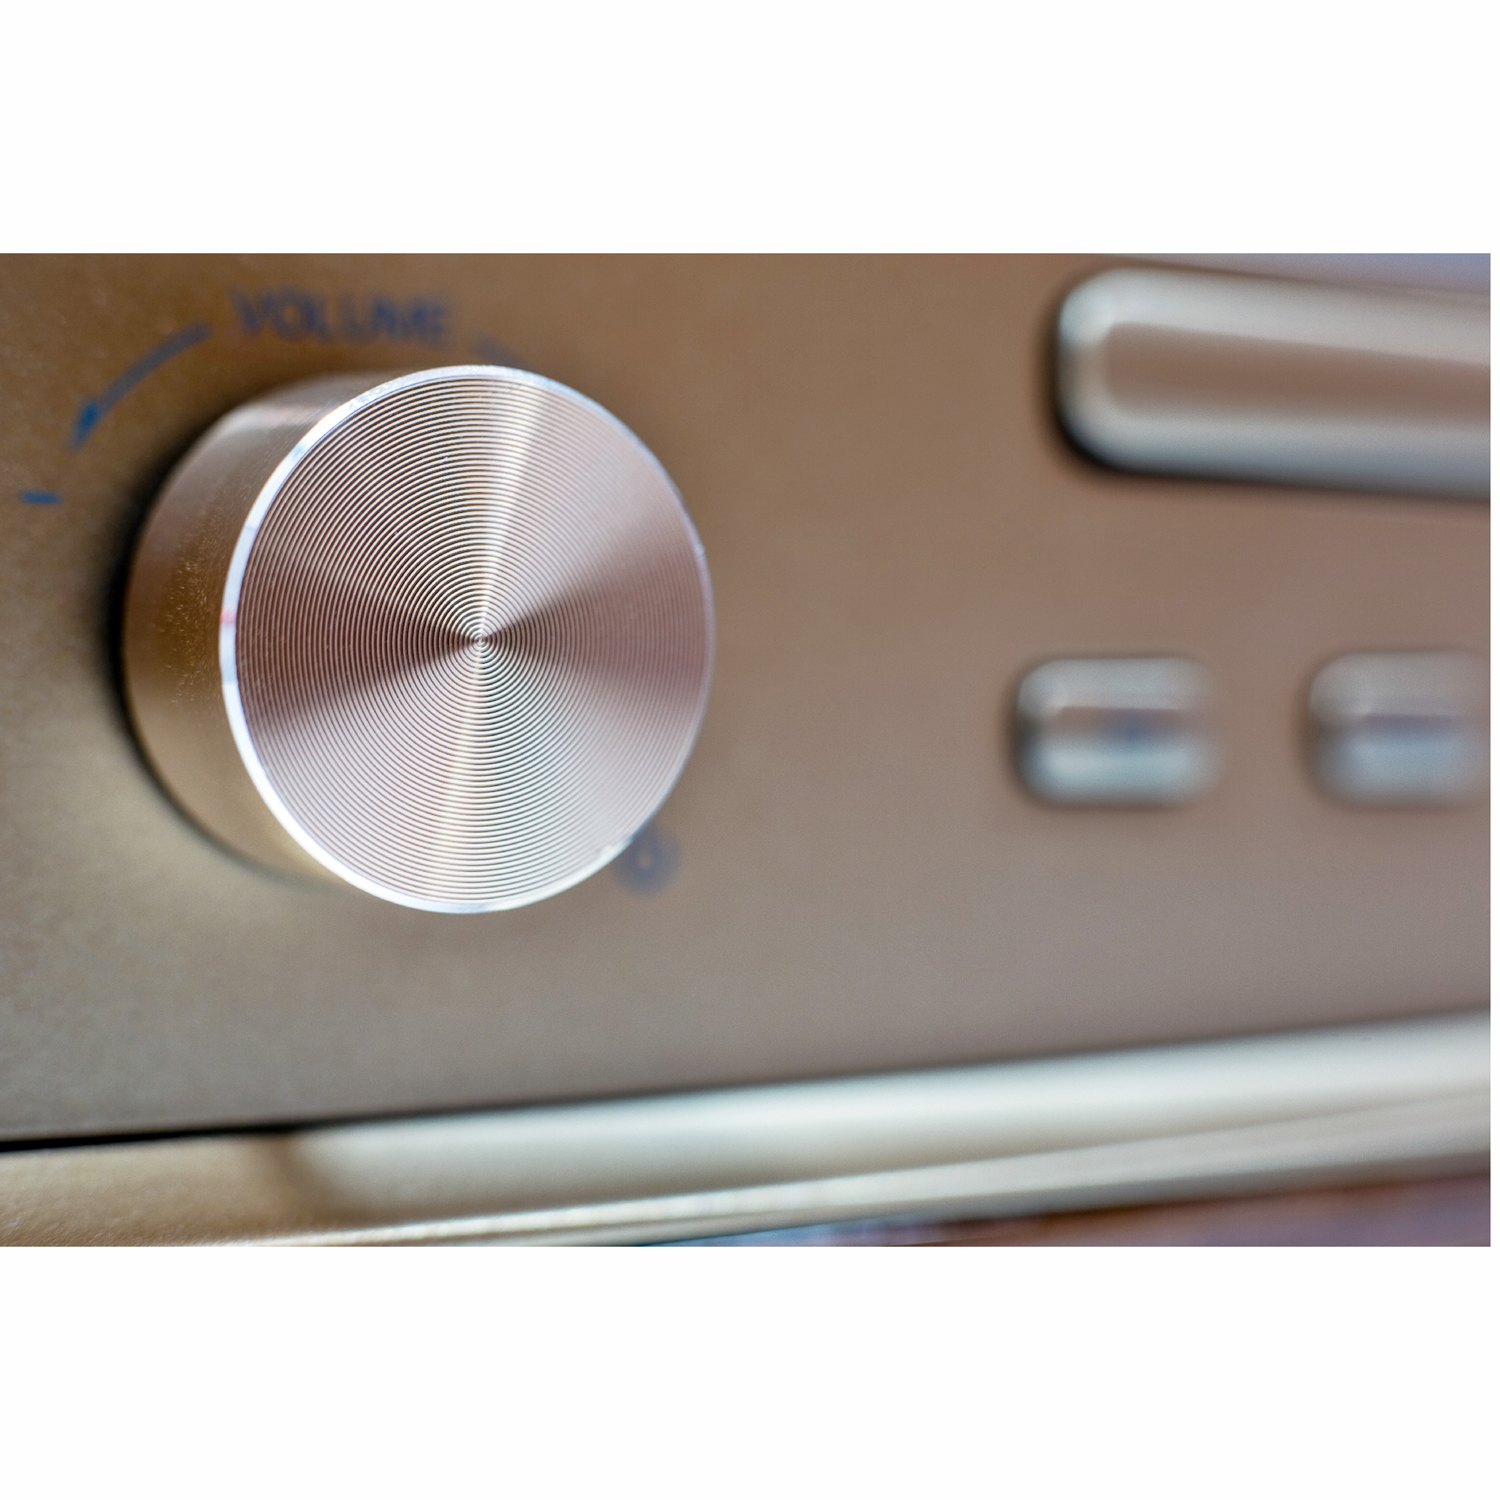 Soundmaster DAB970 Stereo BT/CD/USB och radio